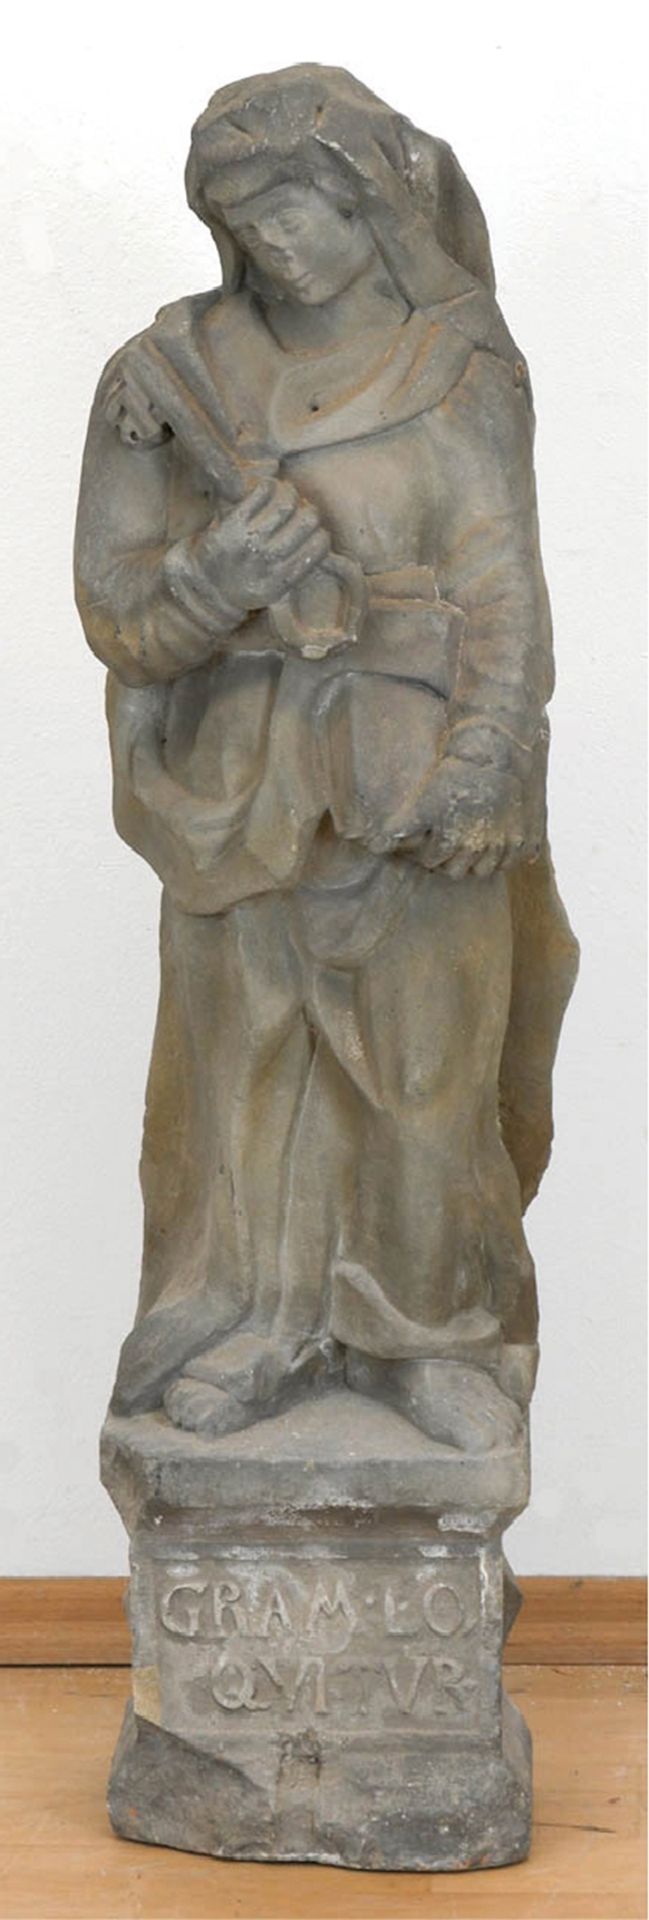 Sandstein-Figur, 16. Jh.,  vollplastisch, im langen Faltengewand, mit Atributen Schlüssel und Buch,